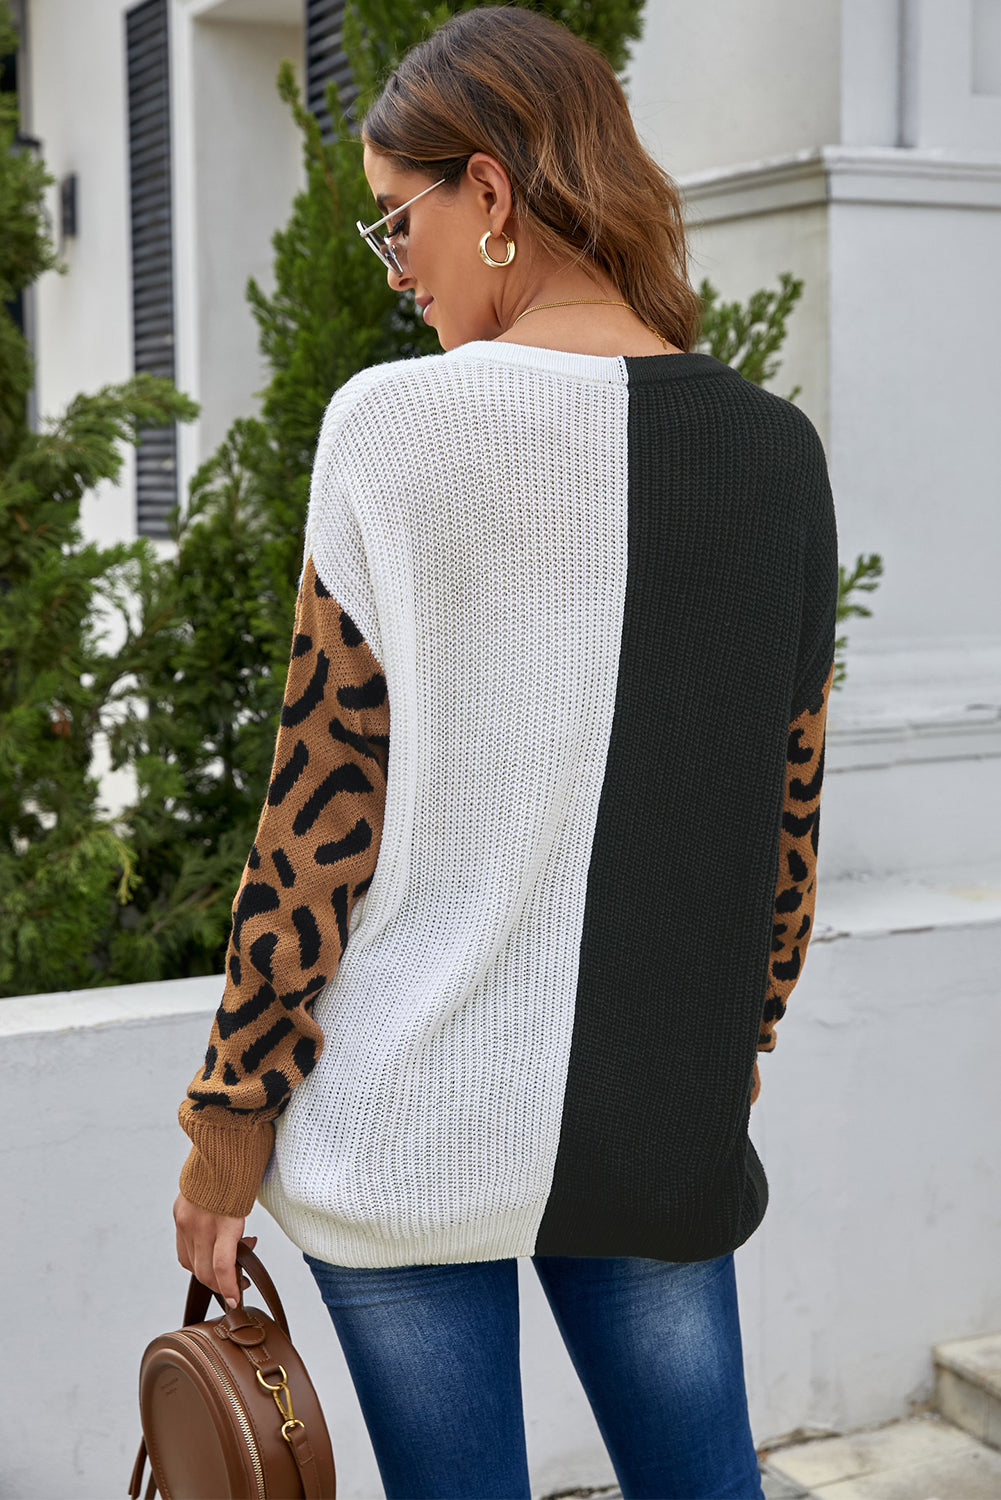 Pulover z V izrezom v kontrastni barvi z leopardjim vzorcem